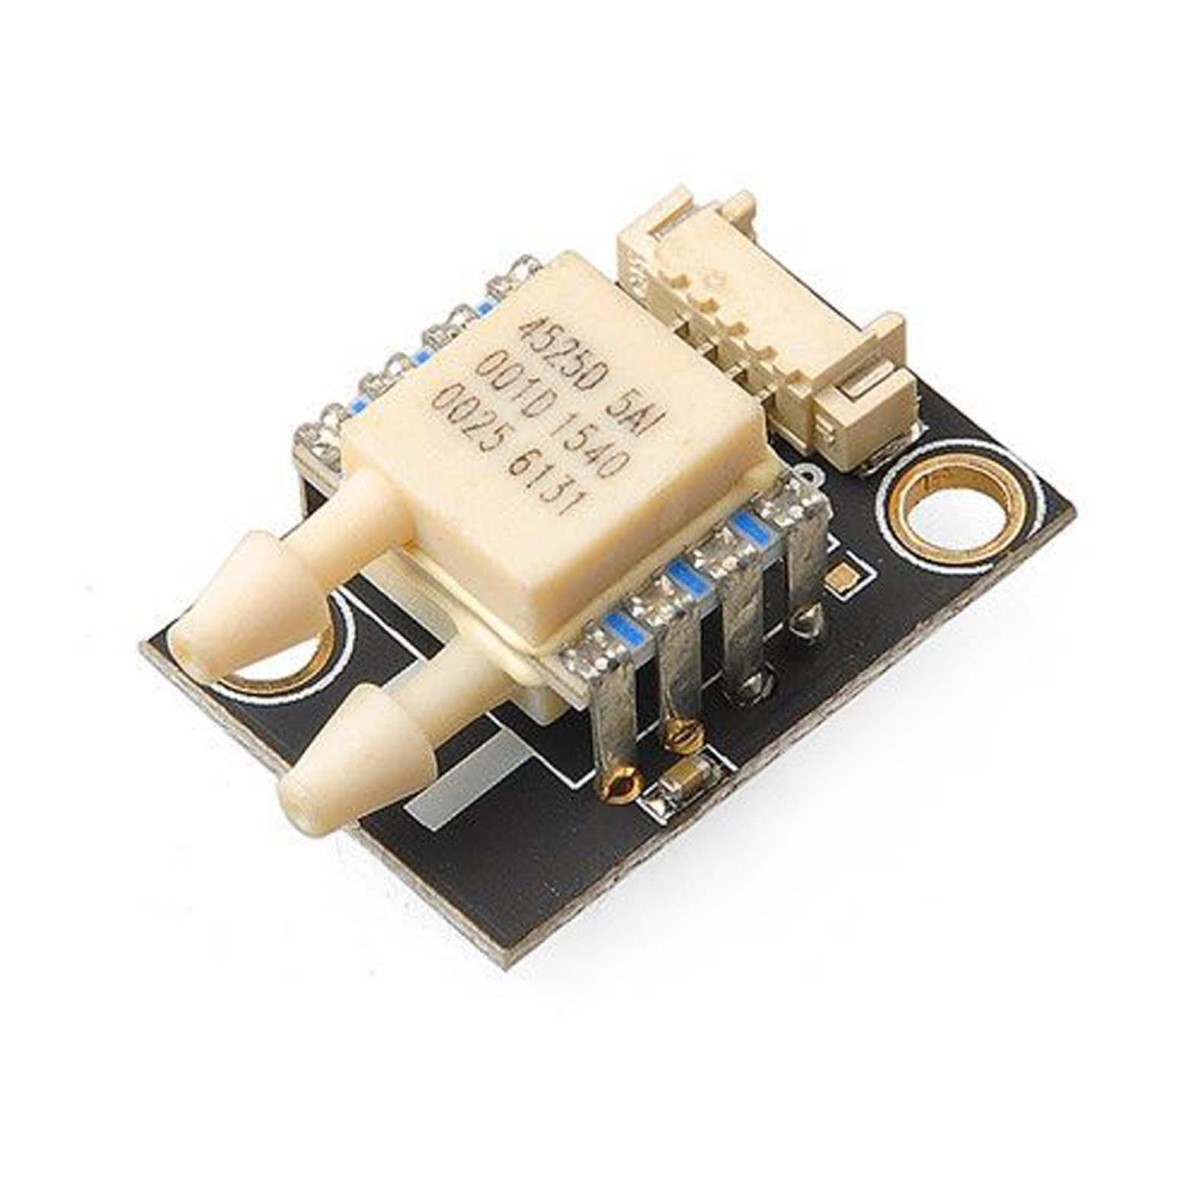 4525DO sensor - Additional devices